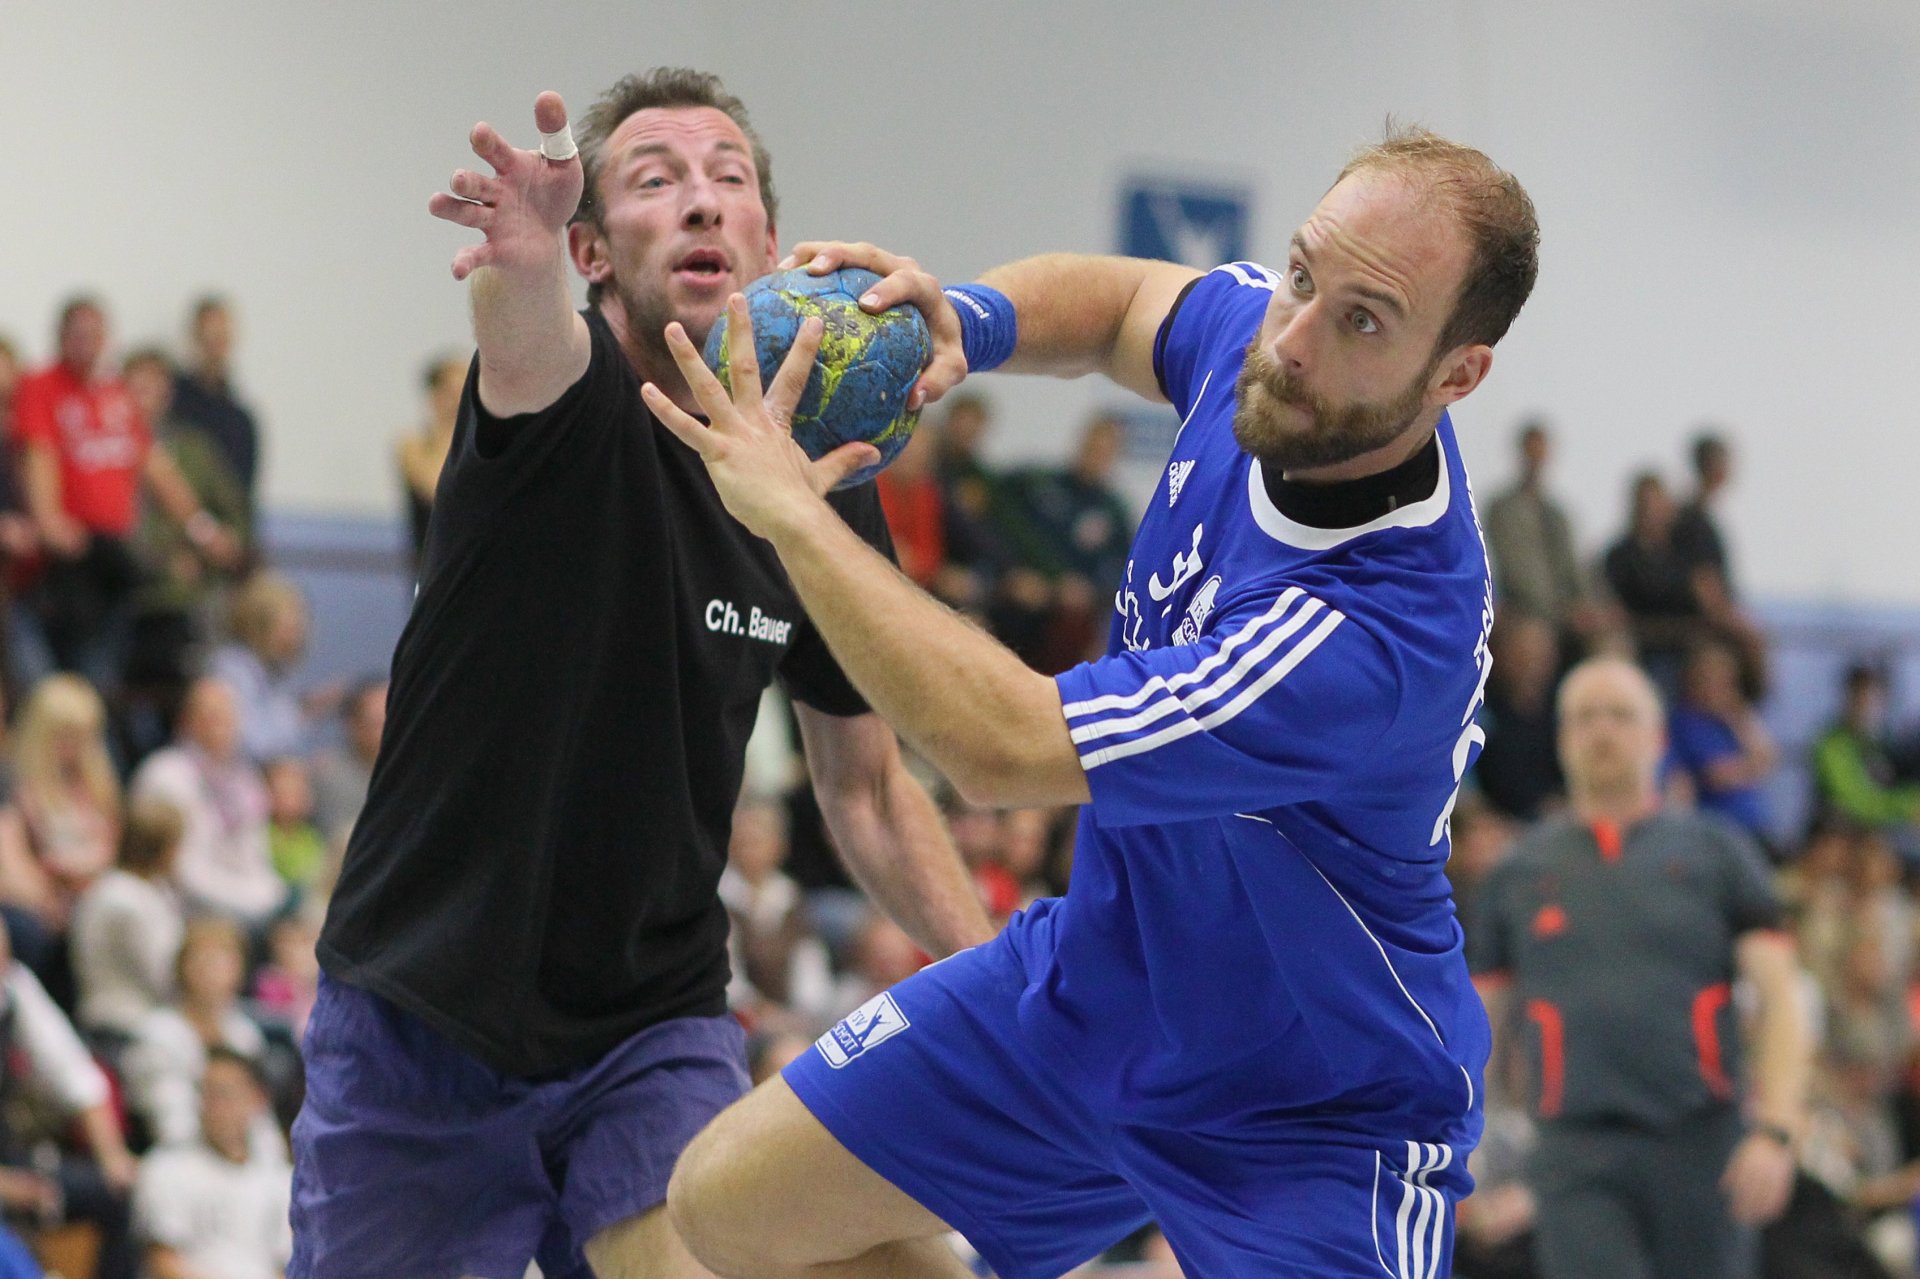 Aber es gab durchaus dynamische Handballszenen zu sehen, wie hier mit Schott-Spieler Michael Tillinger